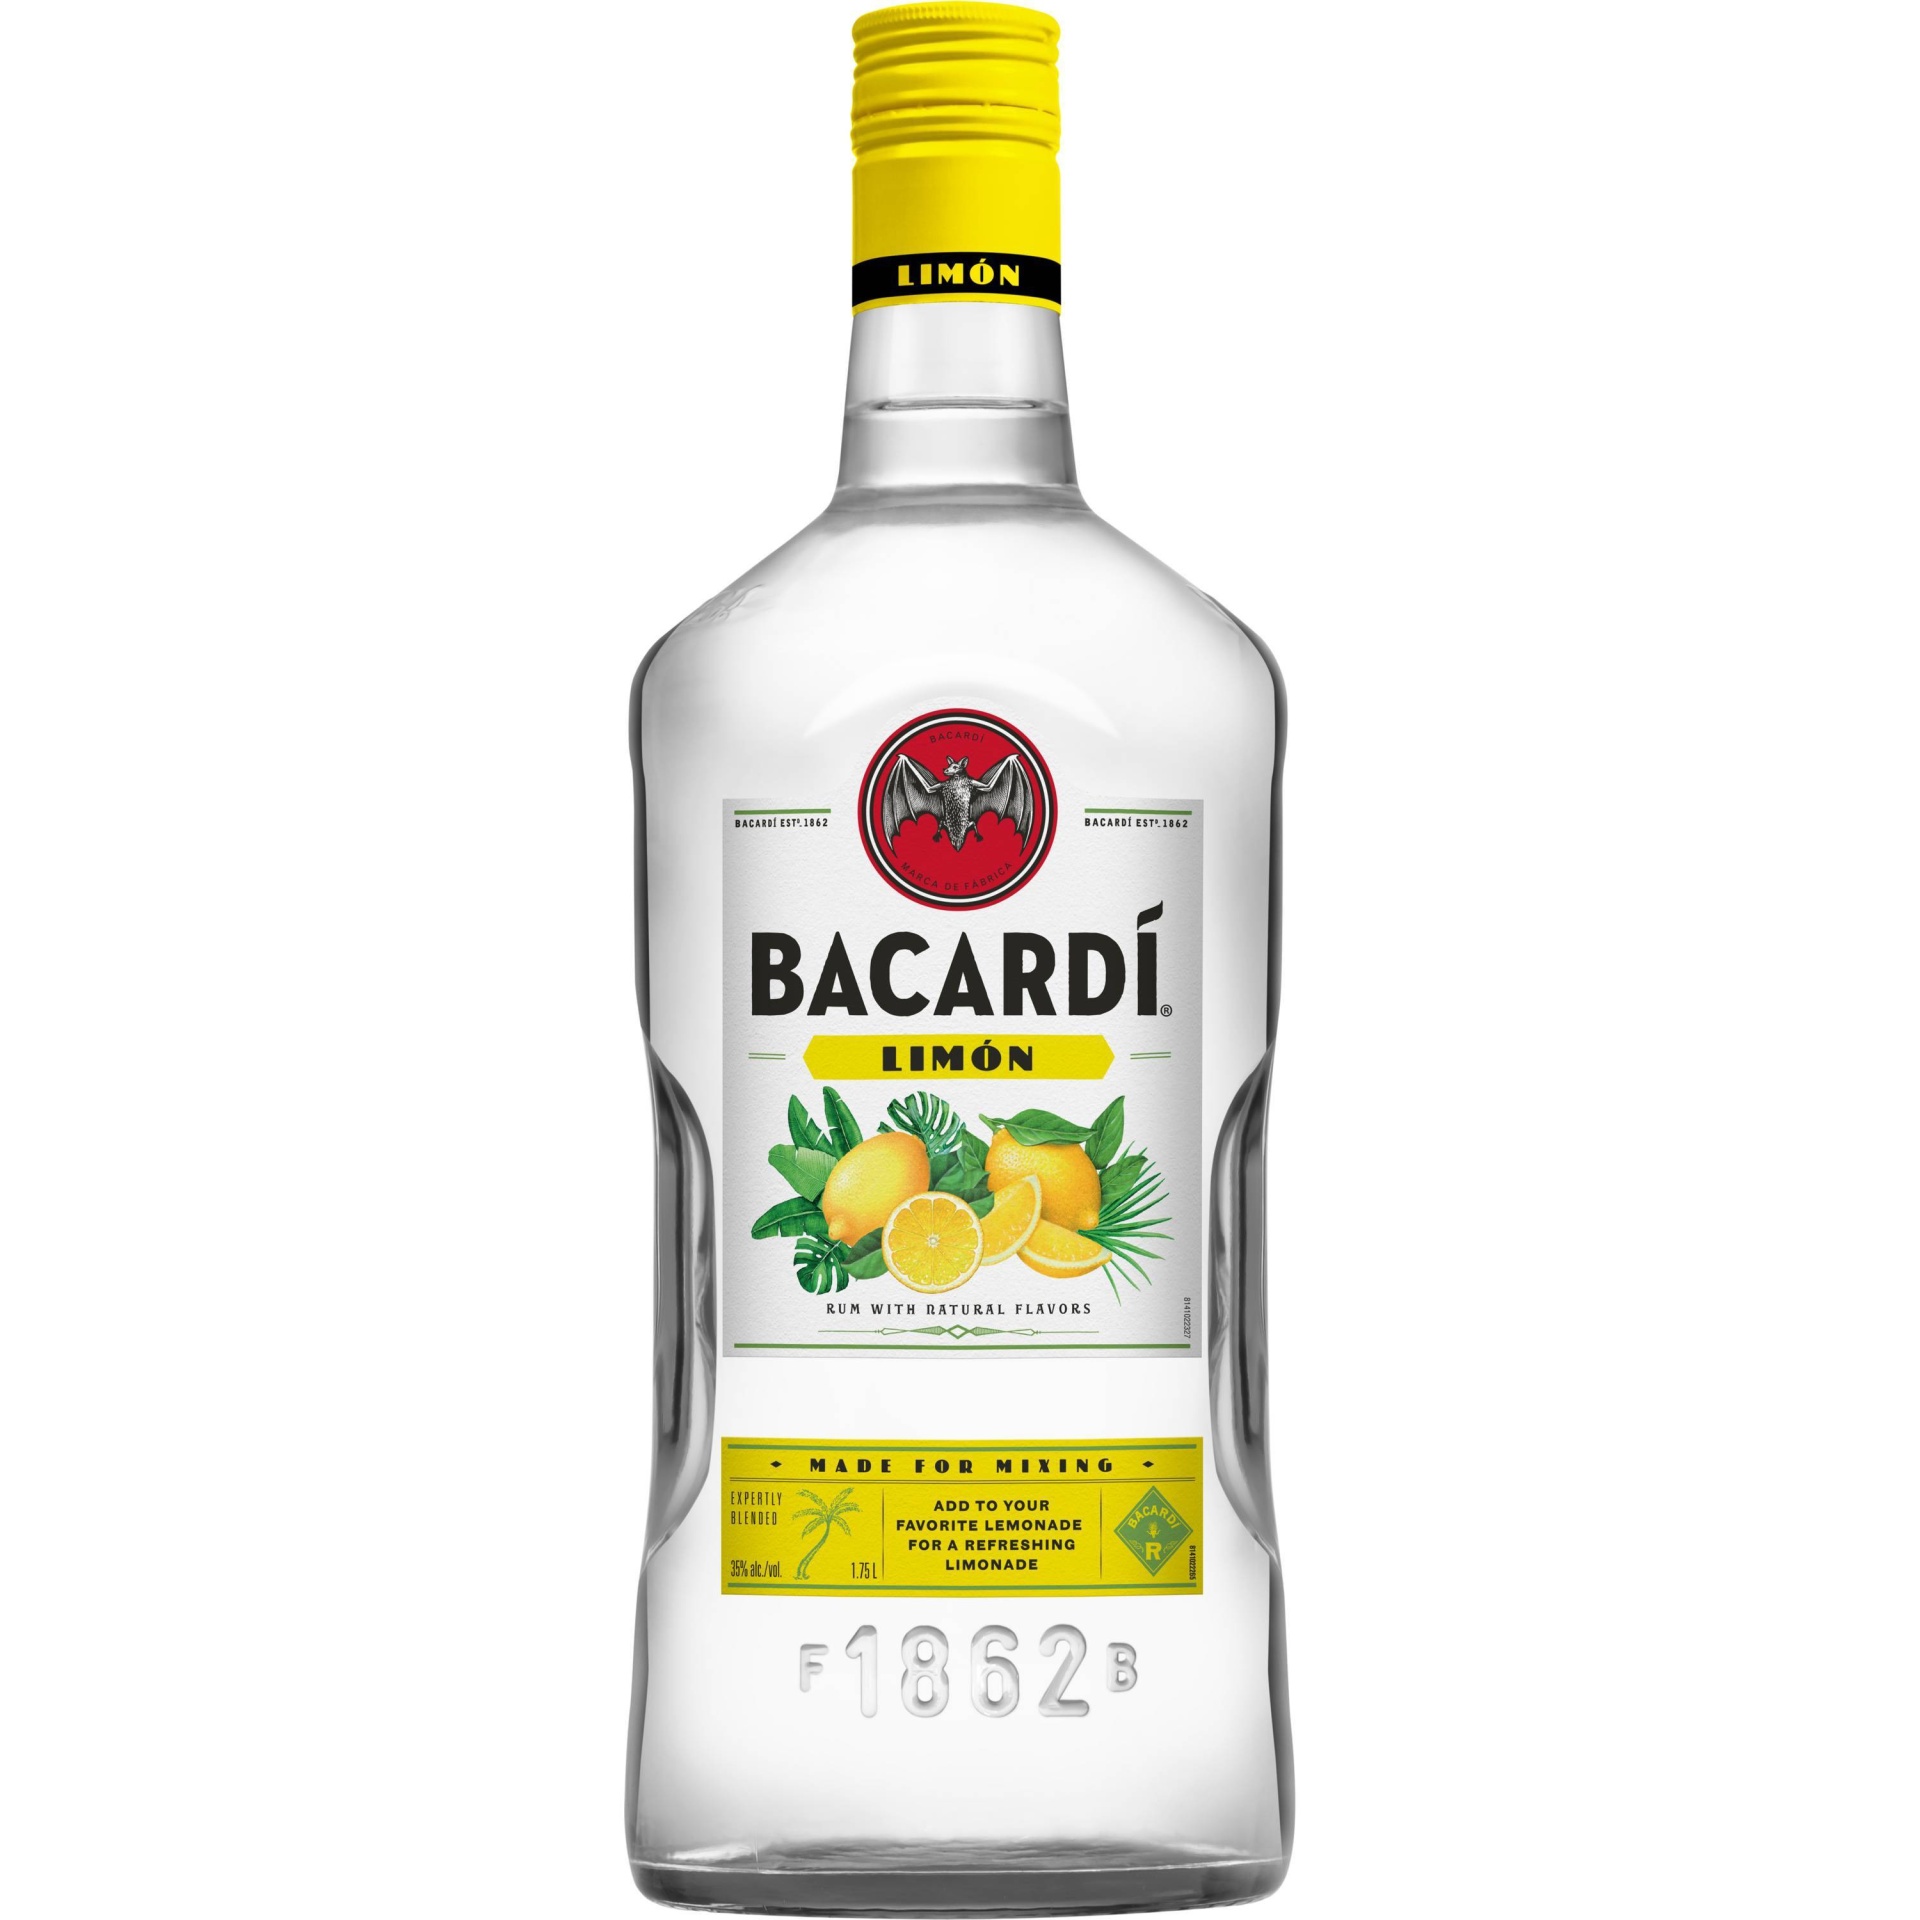 slide 1 of 6, Bacardi Limon Rum Bottle, 1.75 liter